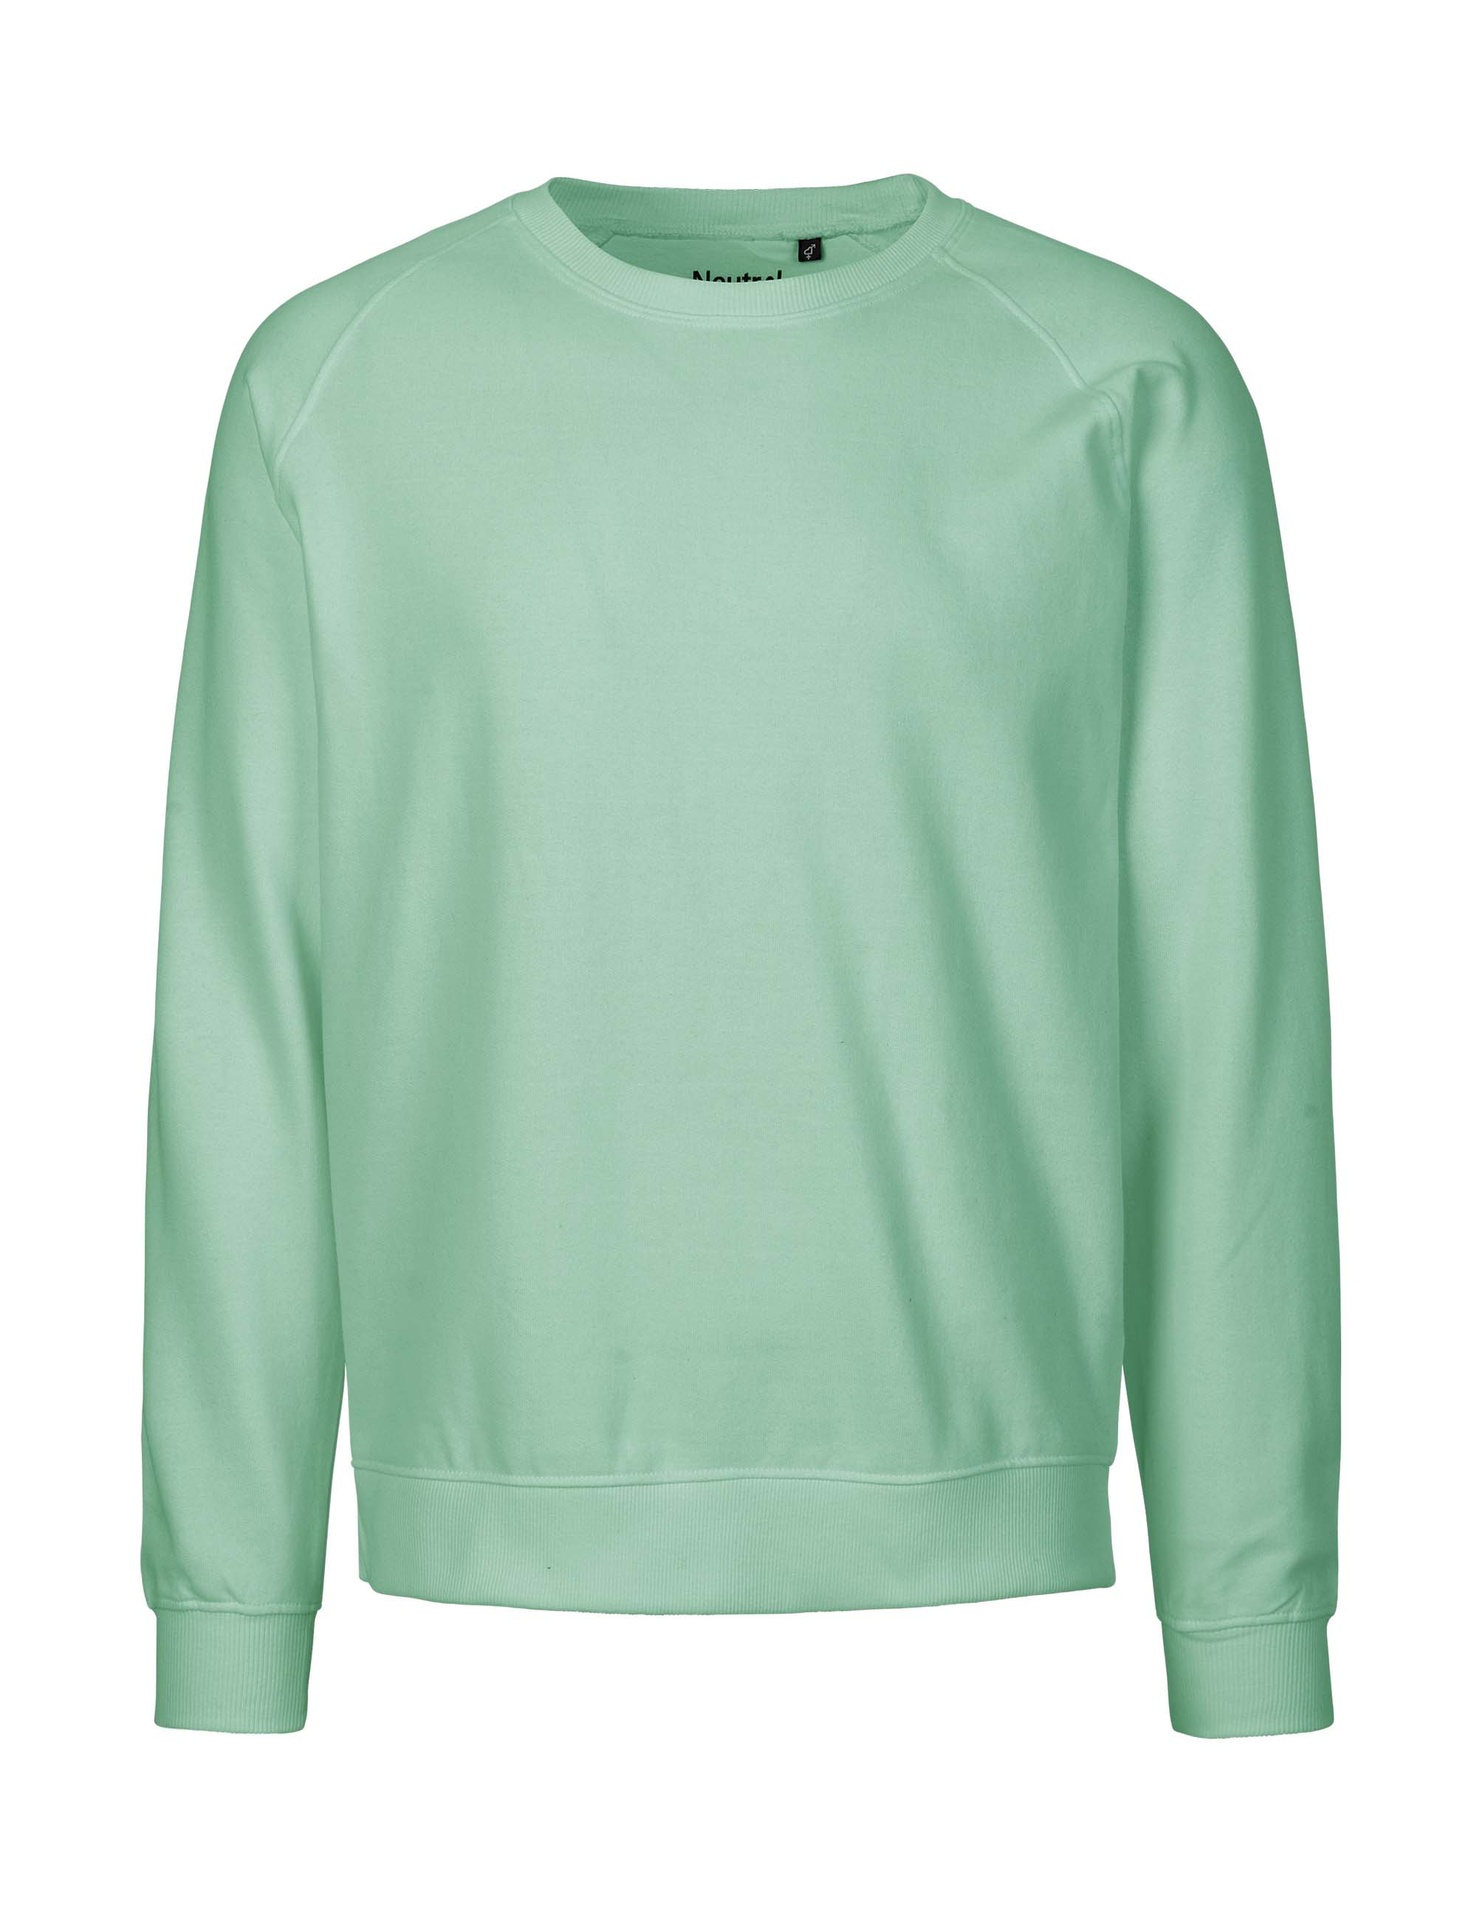 [PR/02826] Unisex Sweatshirt (Dusty Mint 40, L)